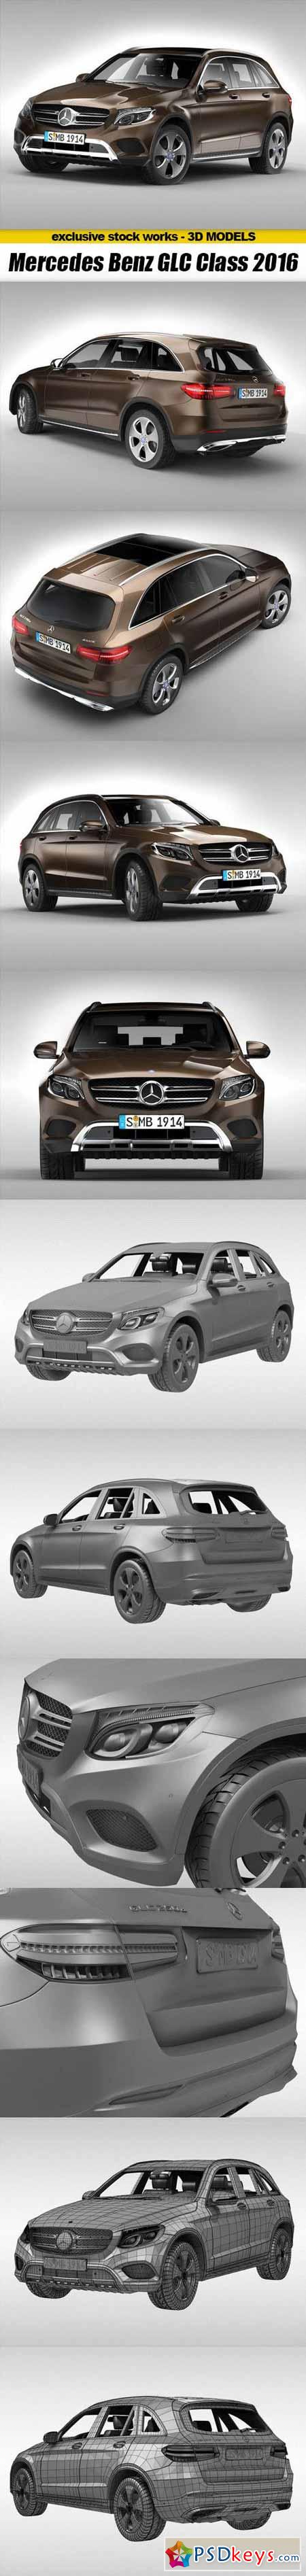 CGTrader 3D MODELS - Mercedes Benz GLC Class 2016